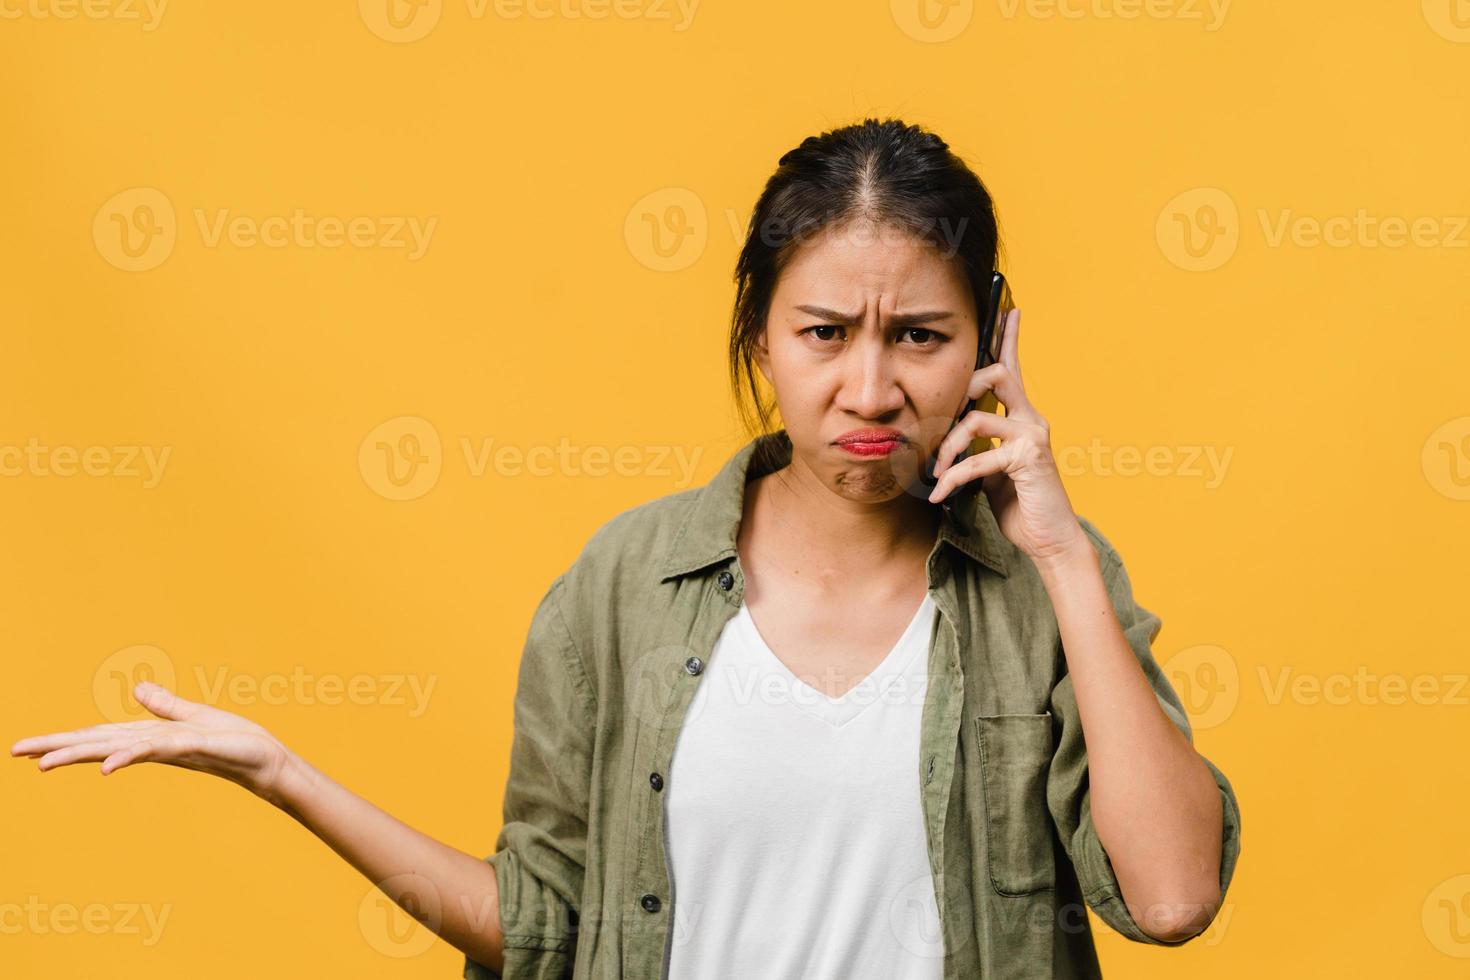 la giovane signora asiatica parla al telefono con espressione negativa, urla eccitata, piange emotivamente arrabbiata in un panno casual e sta isolata su sfondo giallo con spazio vuoto per la copia. concetto di espressione facciale. foto